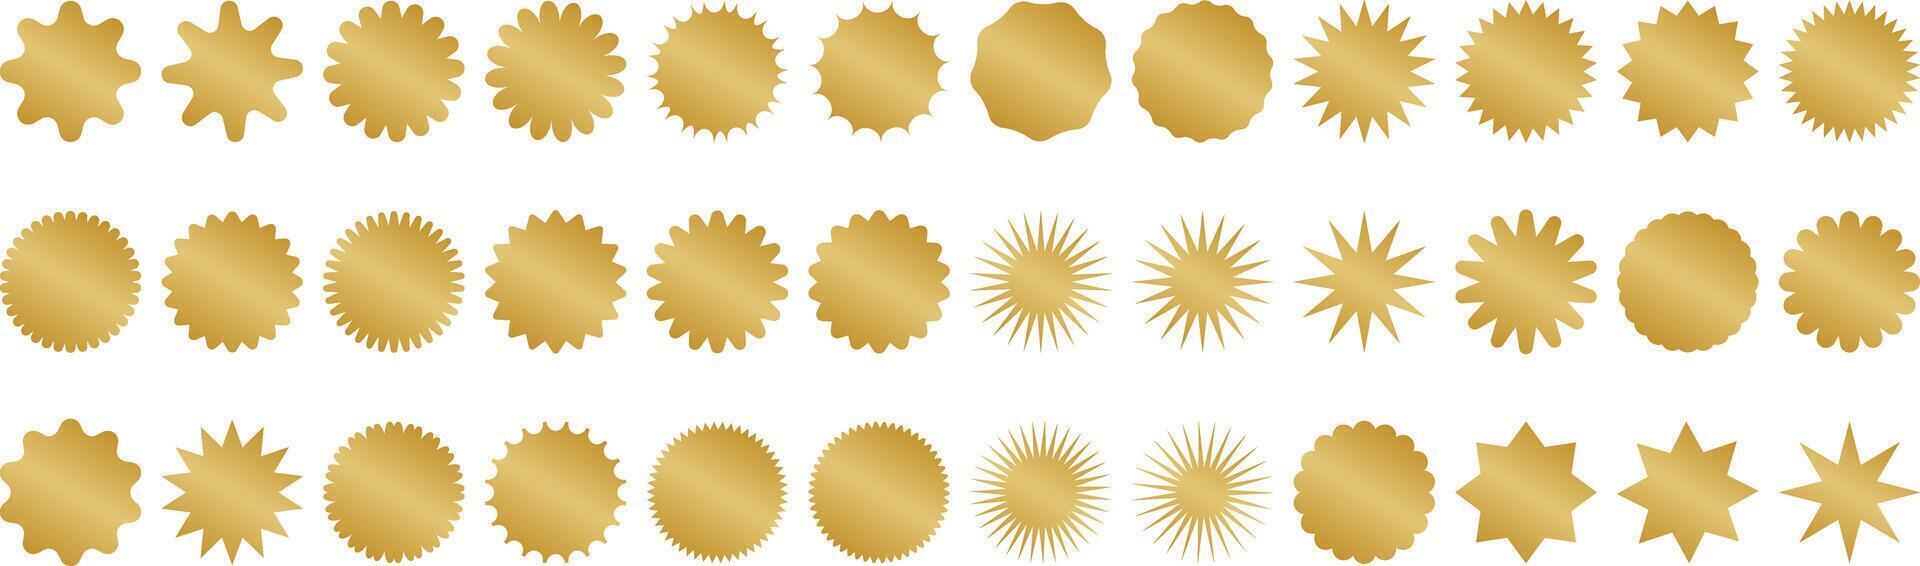 goud starburst set, sticker vormen, uitverkoop of prijs label of kwaliteit Mark ontwerp, retro korting insigne, zonnestraal promotionele klem kunst element vector